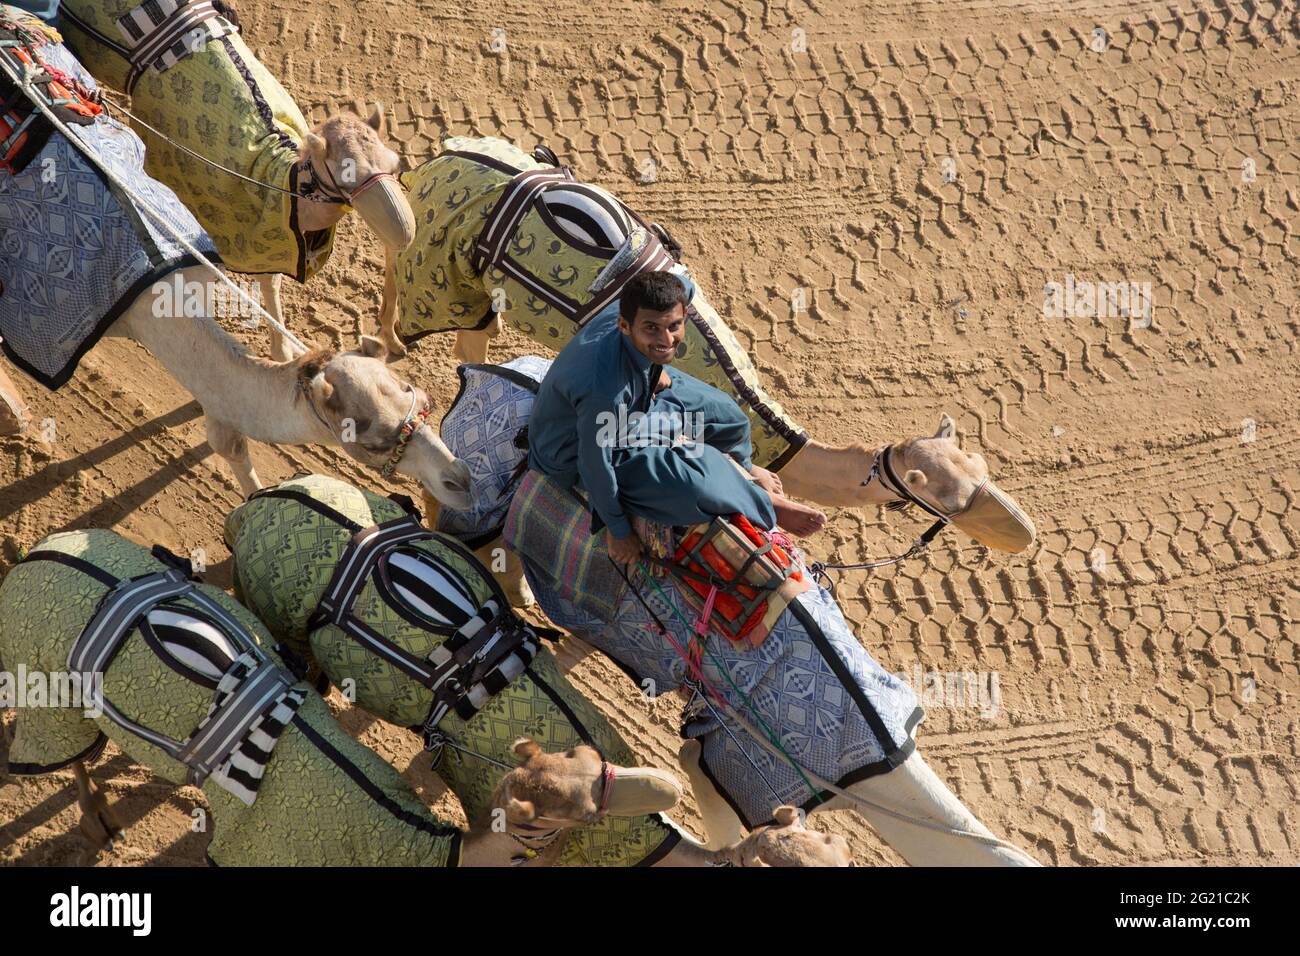 Un jeune jockey pakistanais forme de jeunes chameaux sur le circuit de course de chameaux de Dubaï, Dubaï, Émirats arabes Unis Banque D'Images